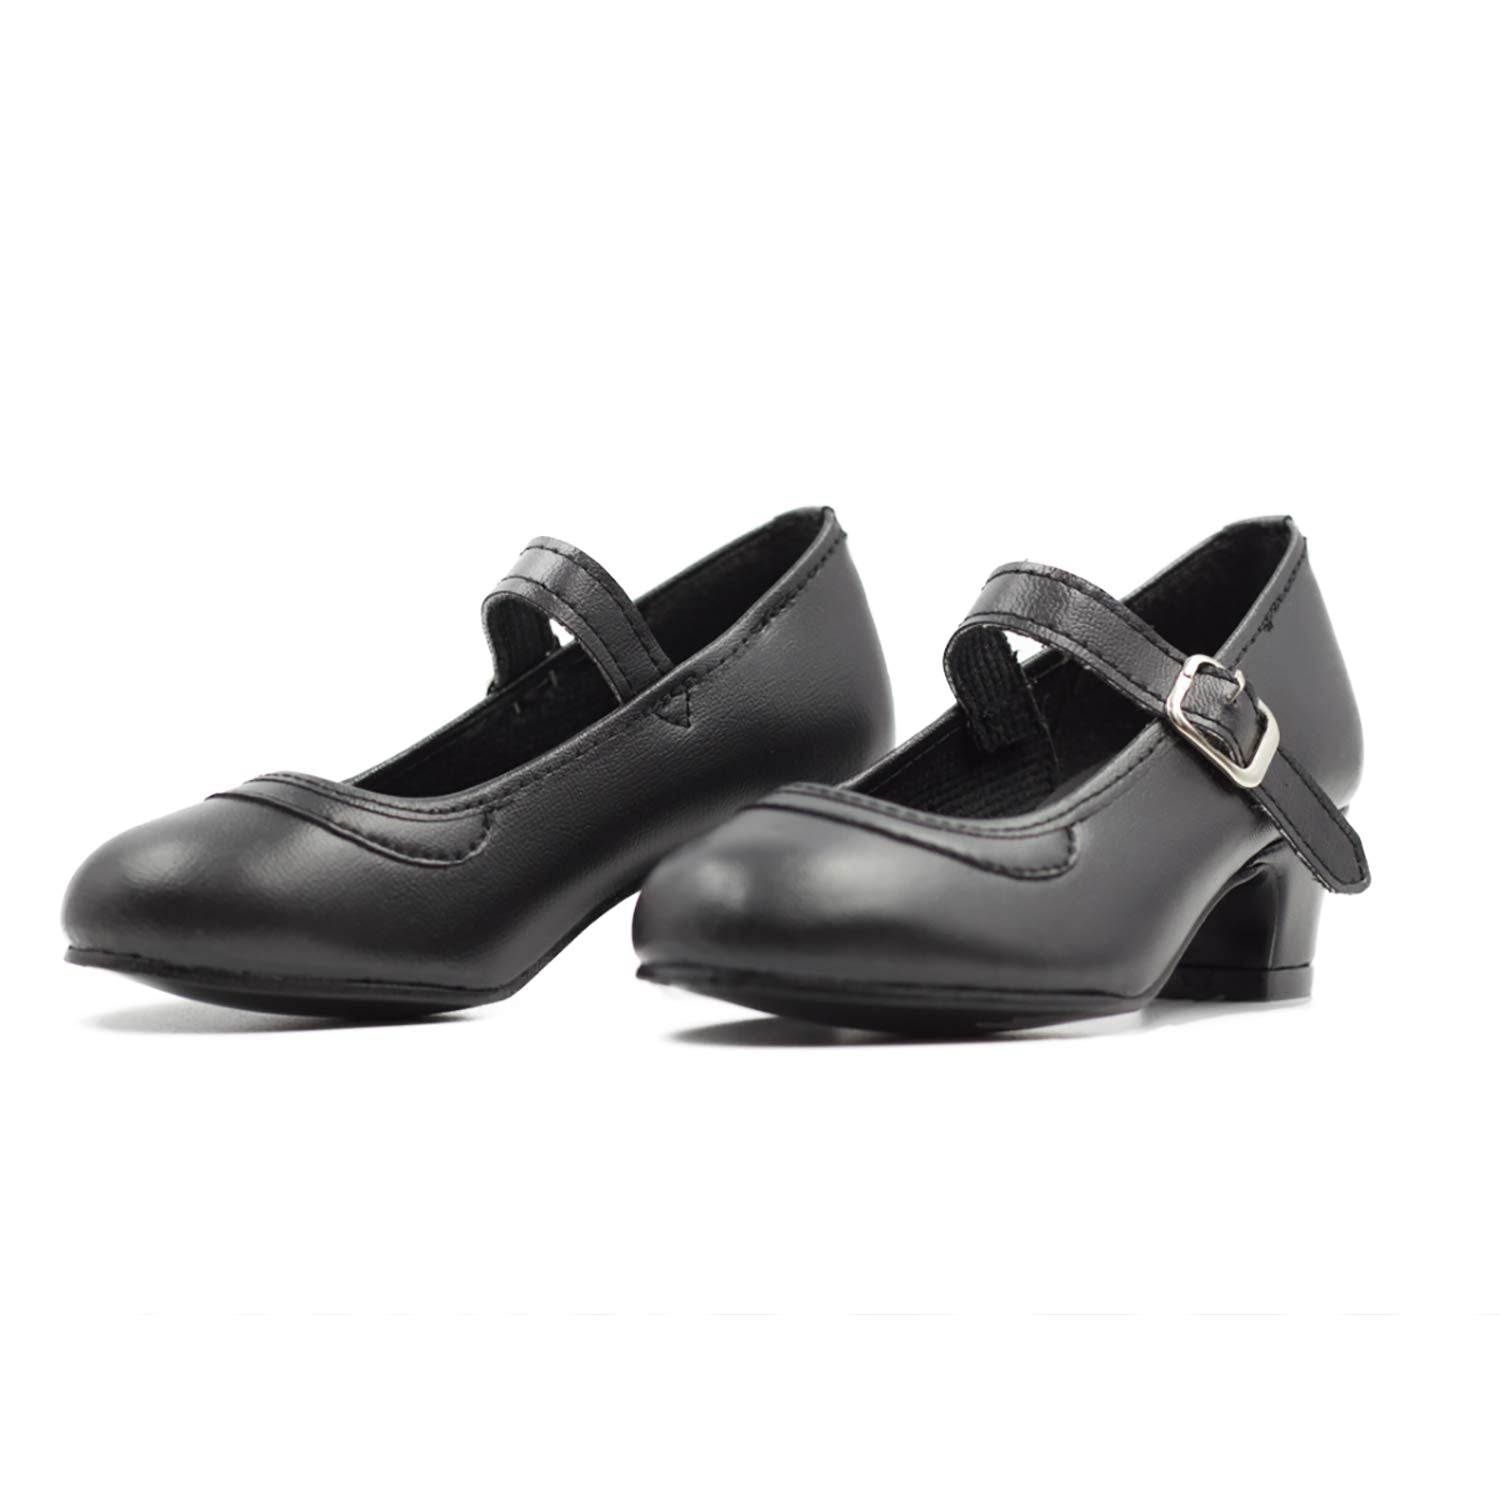 Ole Ole Flamenco Shoes for Girls Mini Ole Dance Shoes for Girls Folklorico Shoe (from 1 to 6 Years Old)